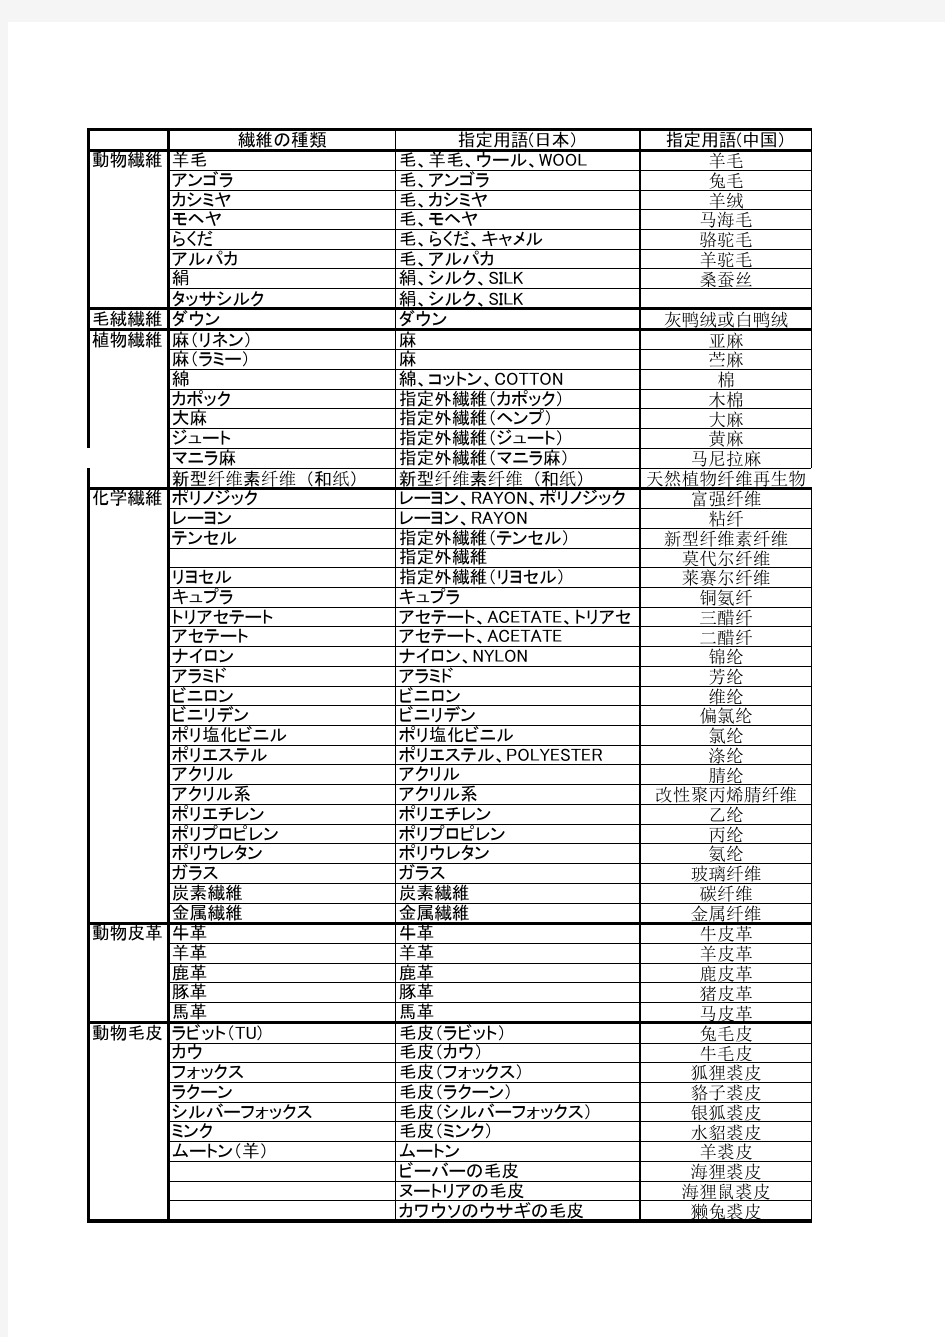 面料混率中日英问对照表及常用部位中日文对照